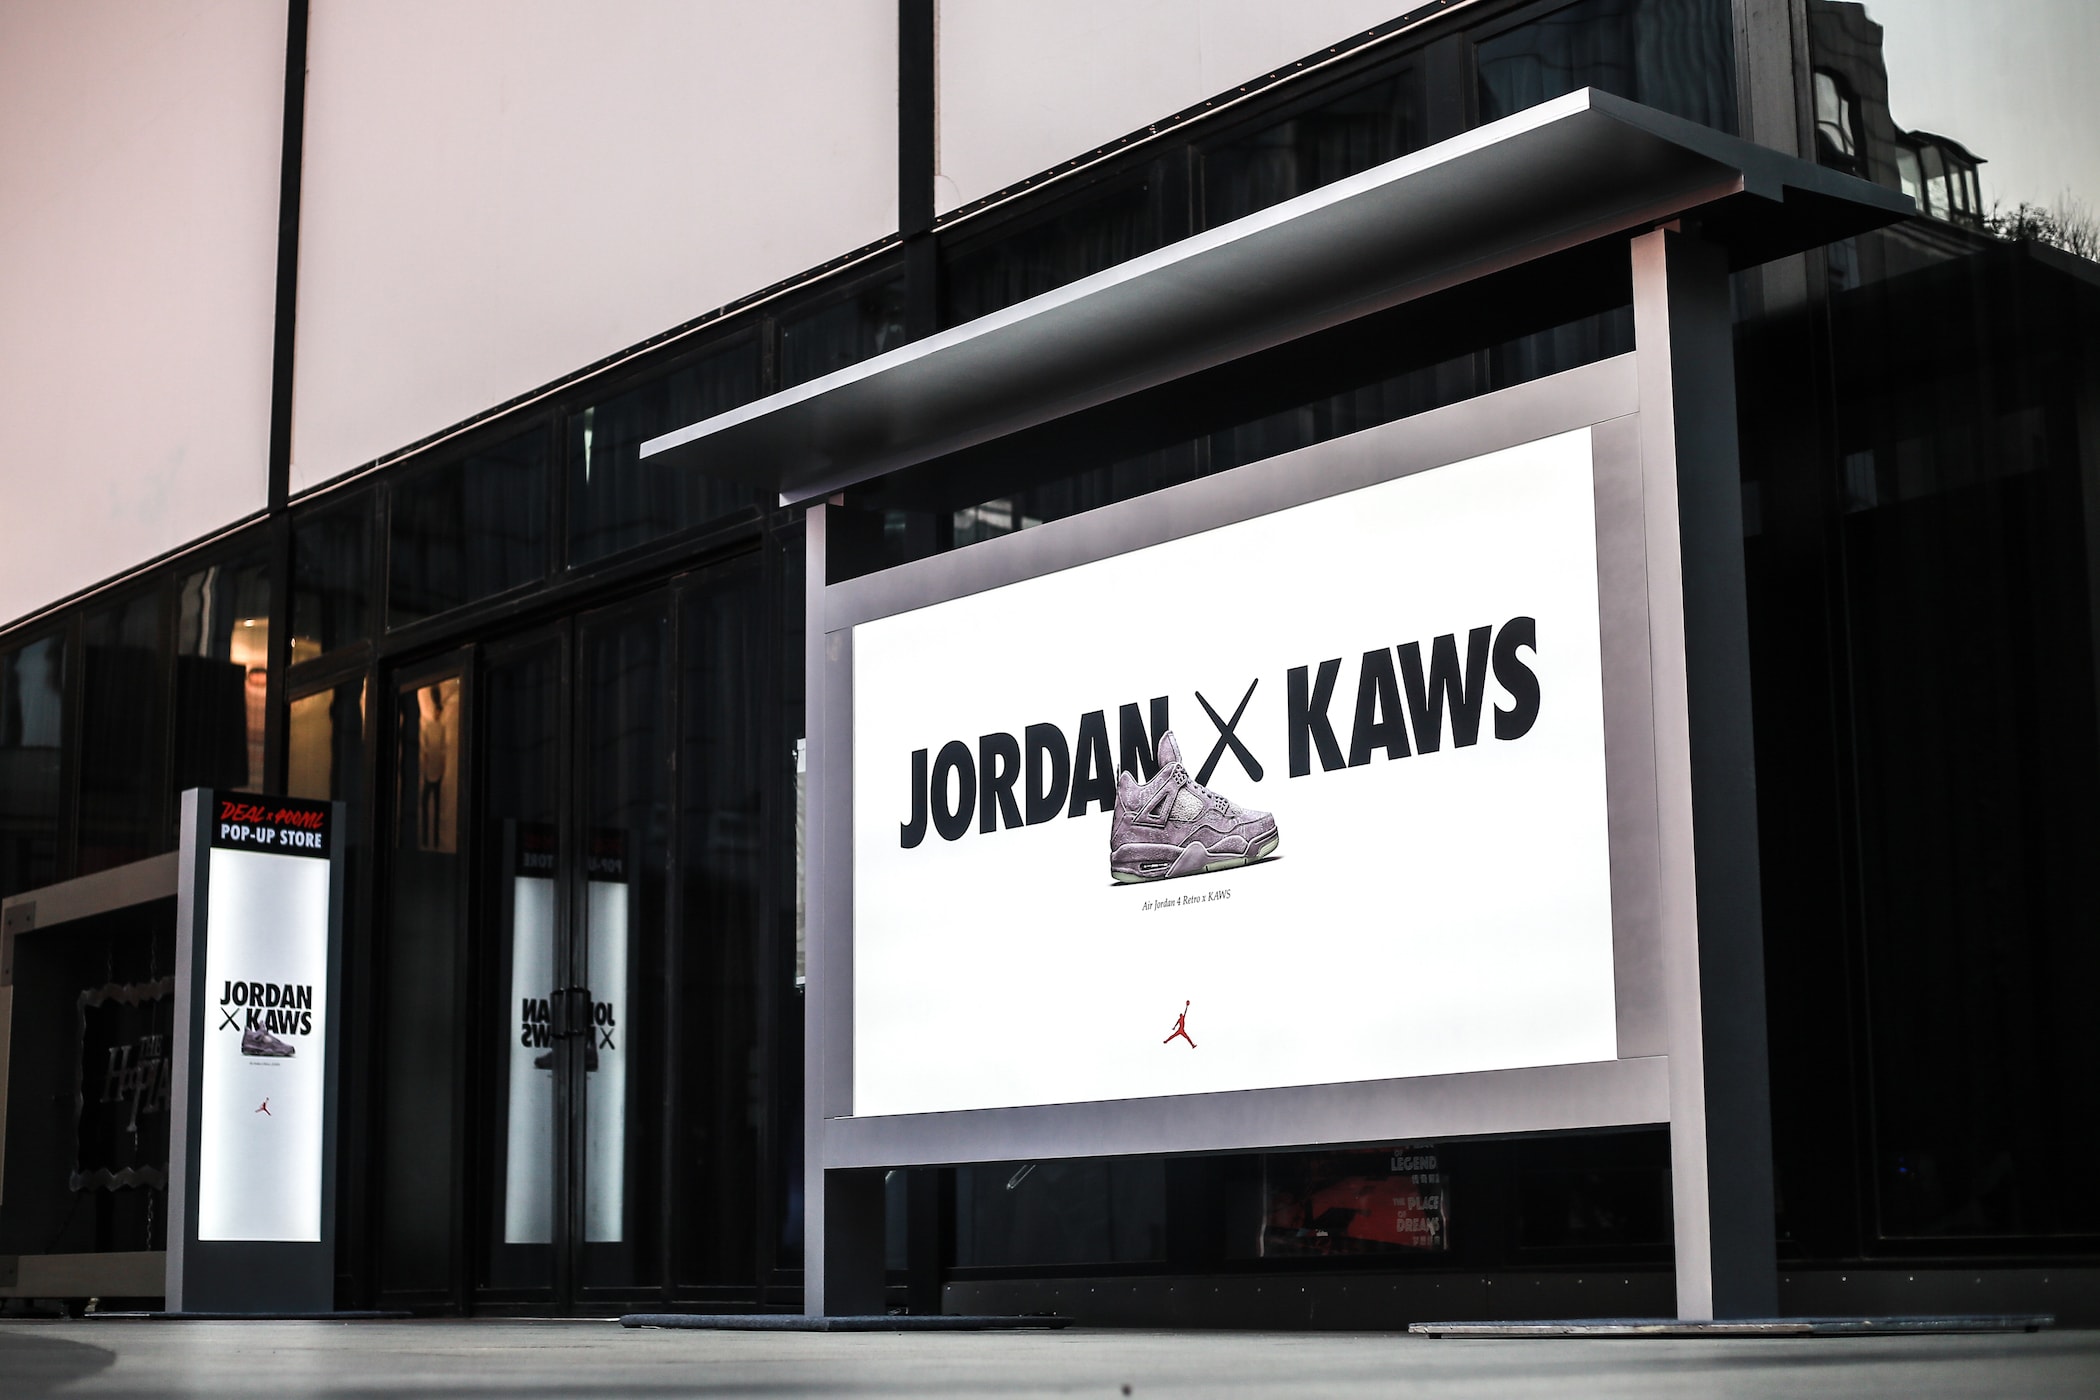 KAWS x Air Jordan 4 DEAL 400ml Recap